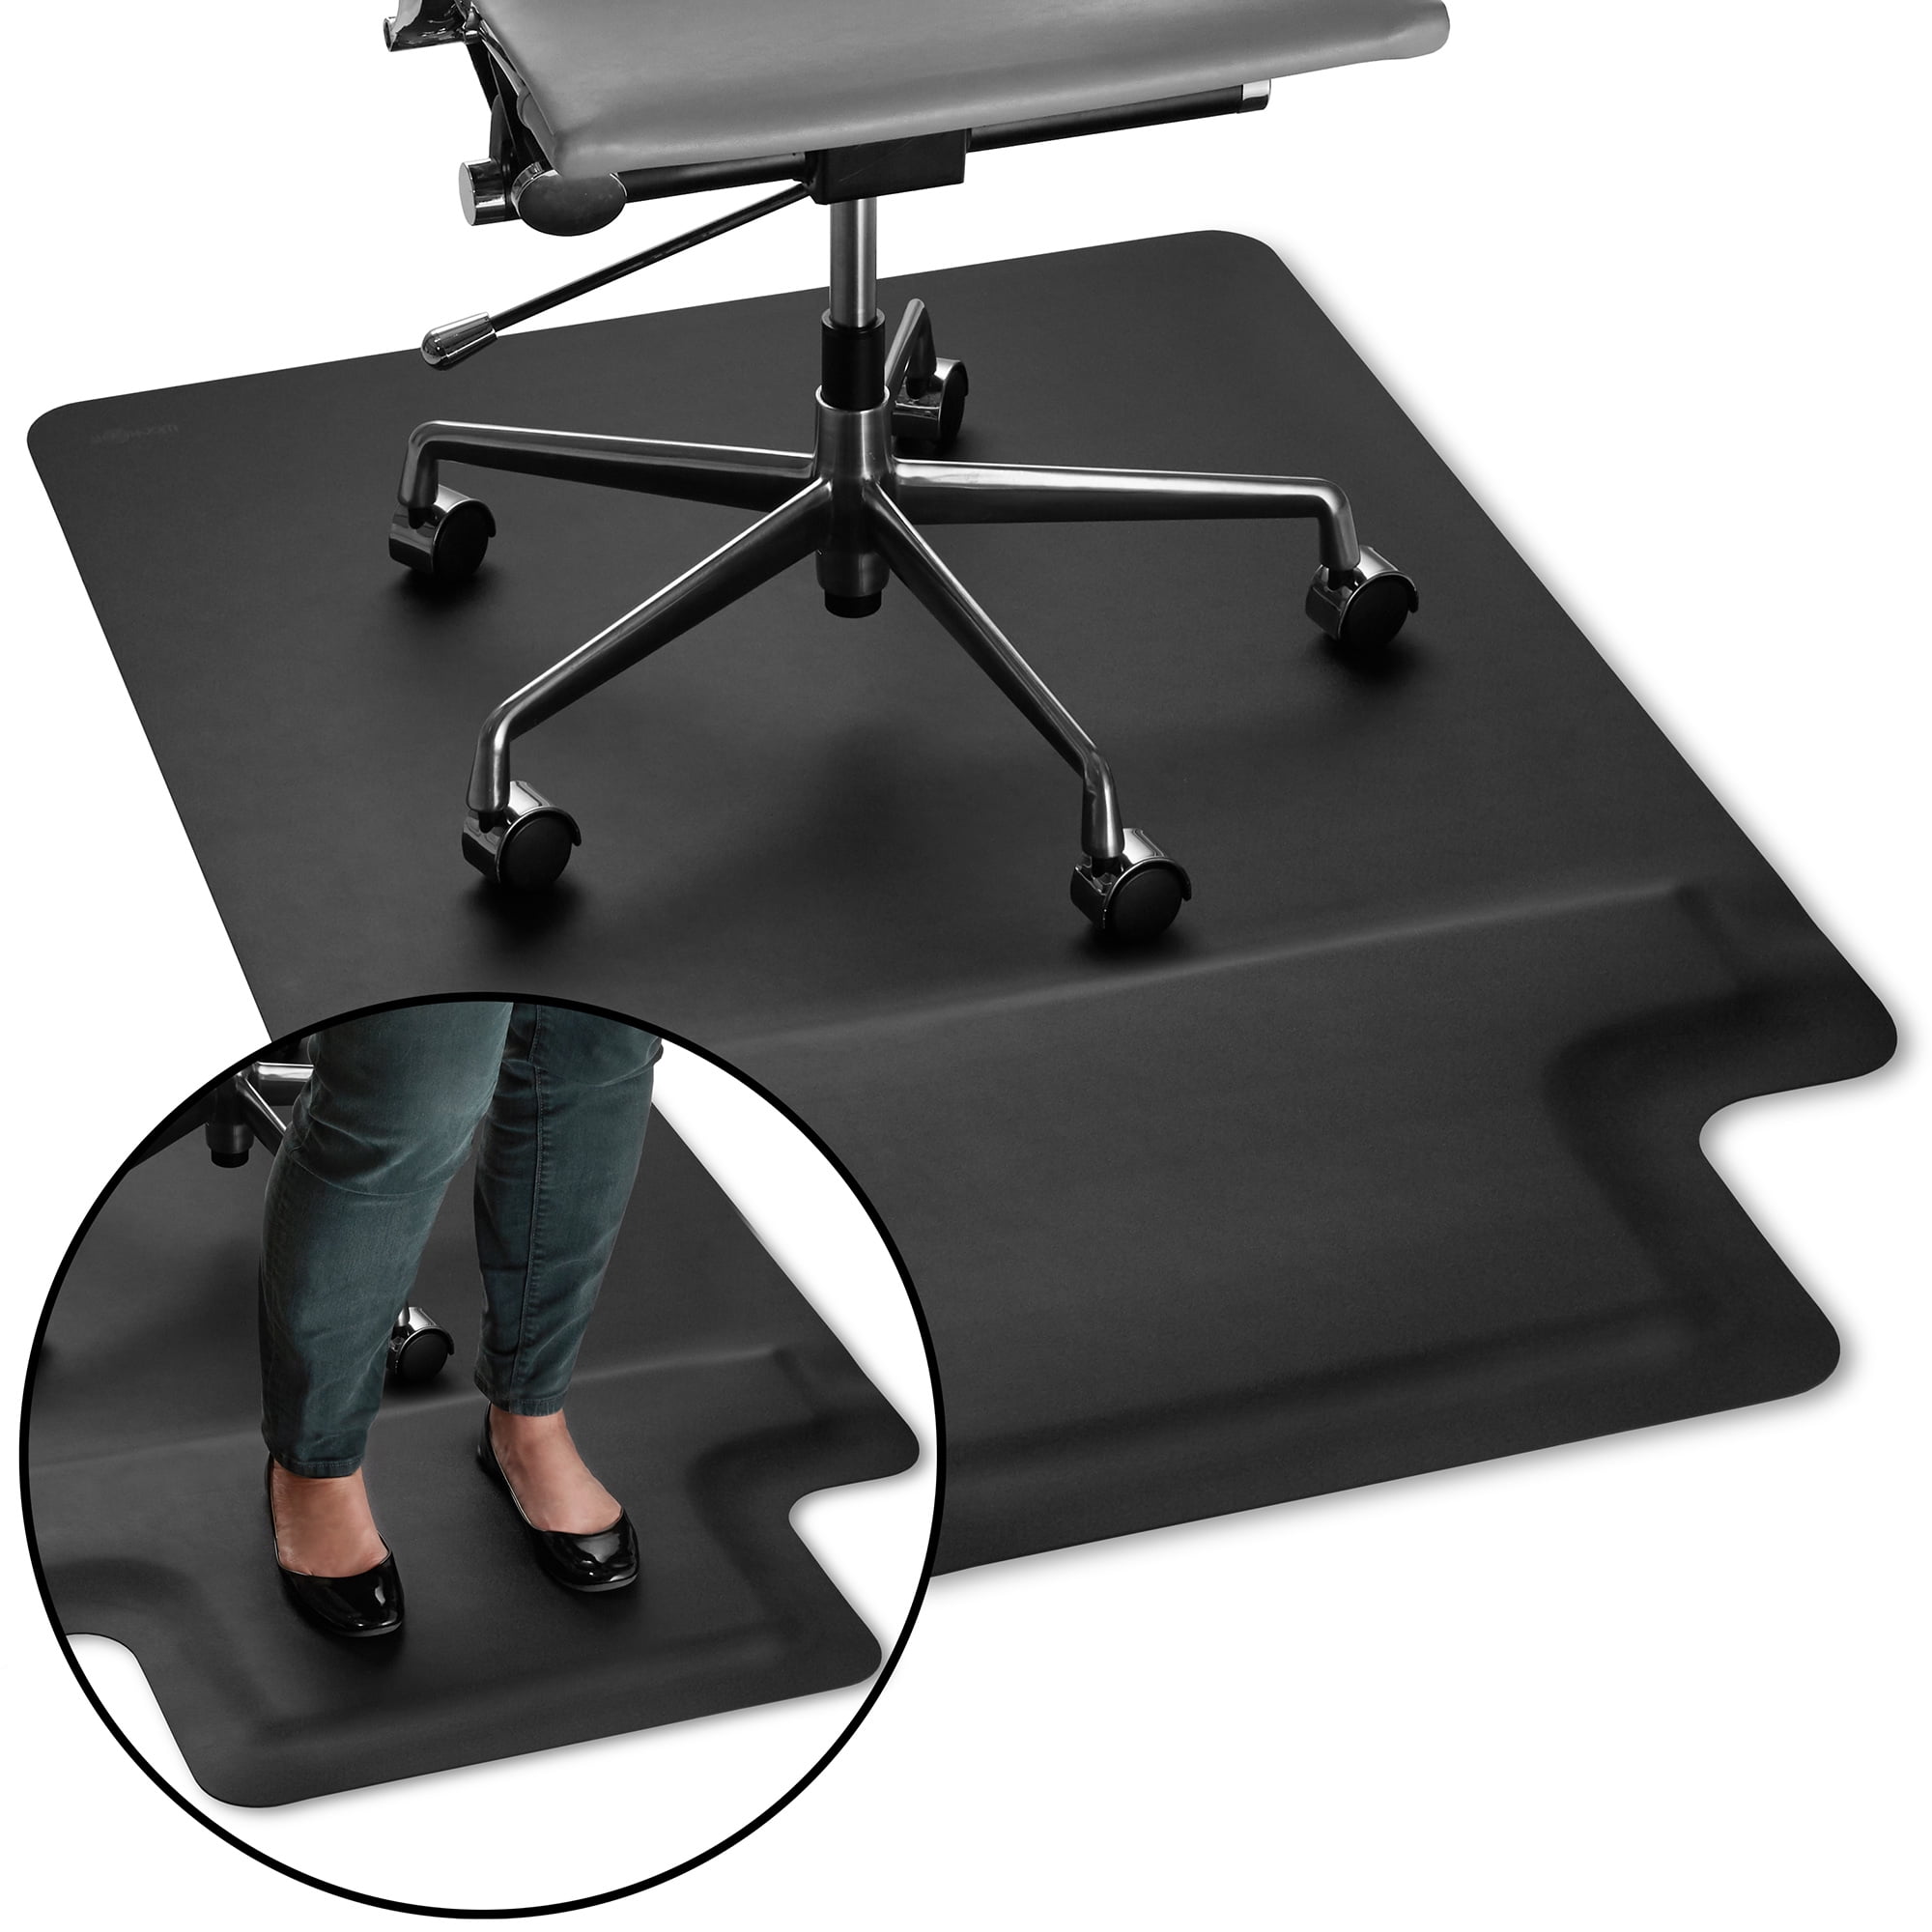 Amucolo 41.73 in. x 20.08 in. Standing Desk Mat Non-Slip Flat Kitchen Mat Office Chair Mat Anti-Fatigue Mat, Black